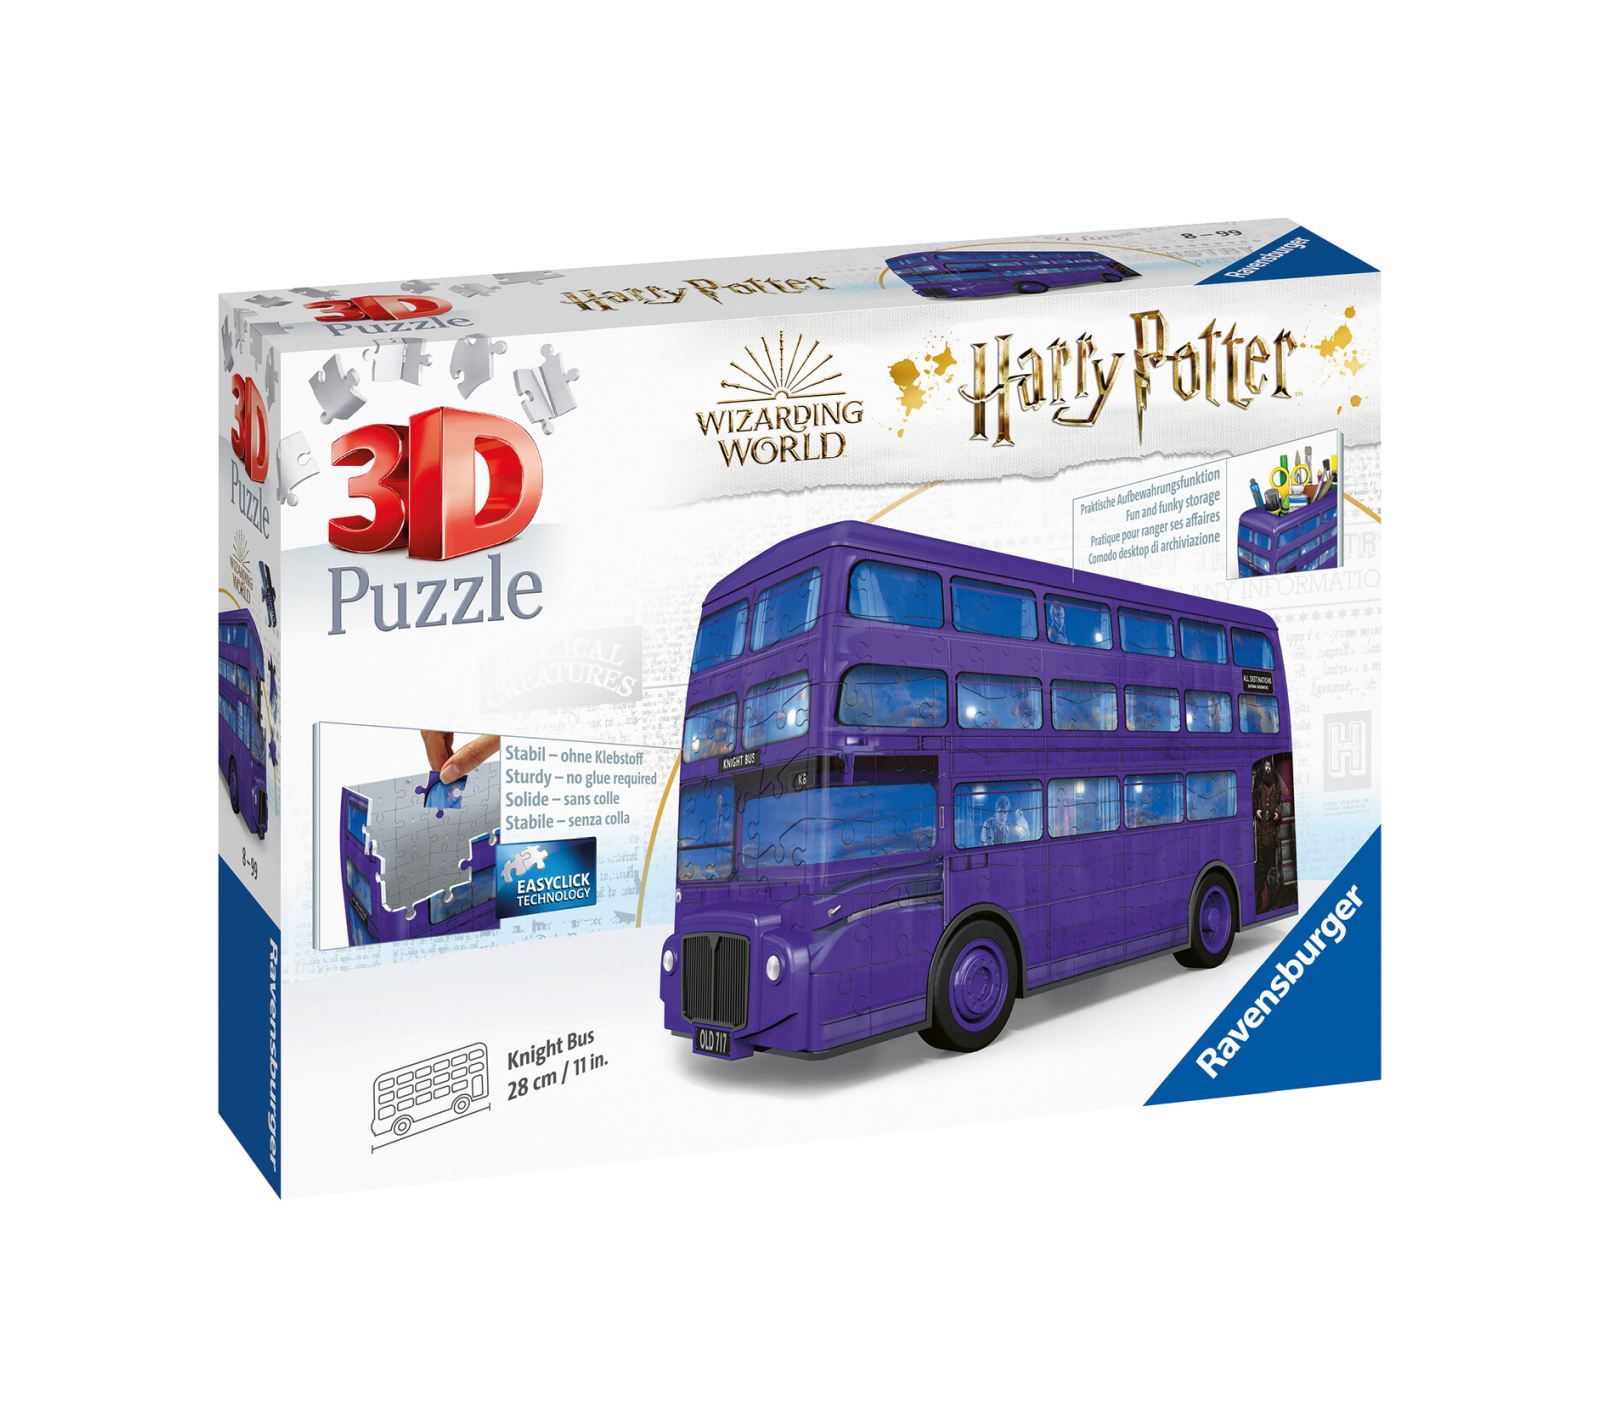 Ravensburger - 3d puzzle nottetempo, bus harry potter, 216 pezzi, 8+ anni - Harry Potter, RAVENSBURGER 3D PUZZLE